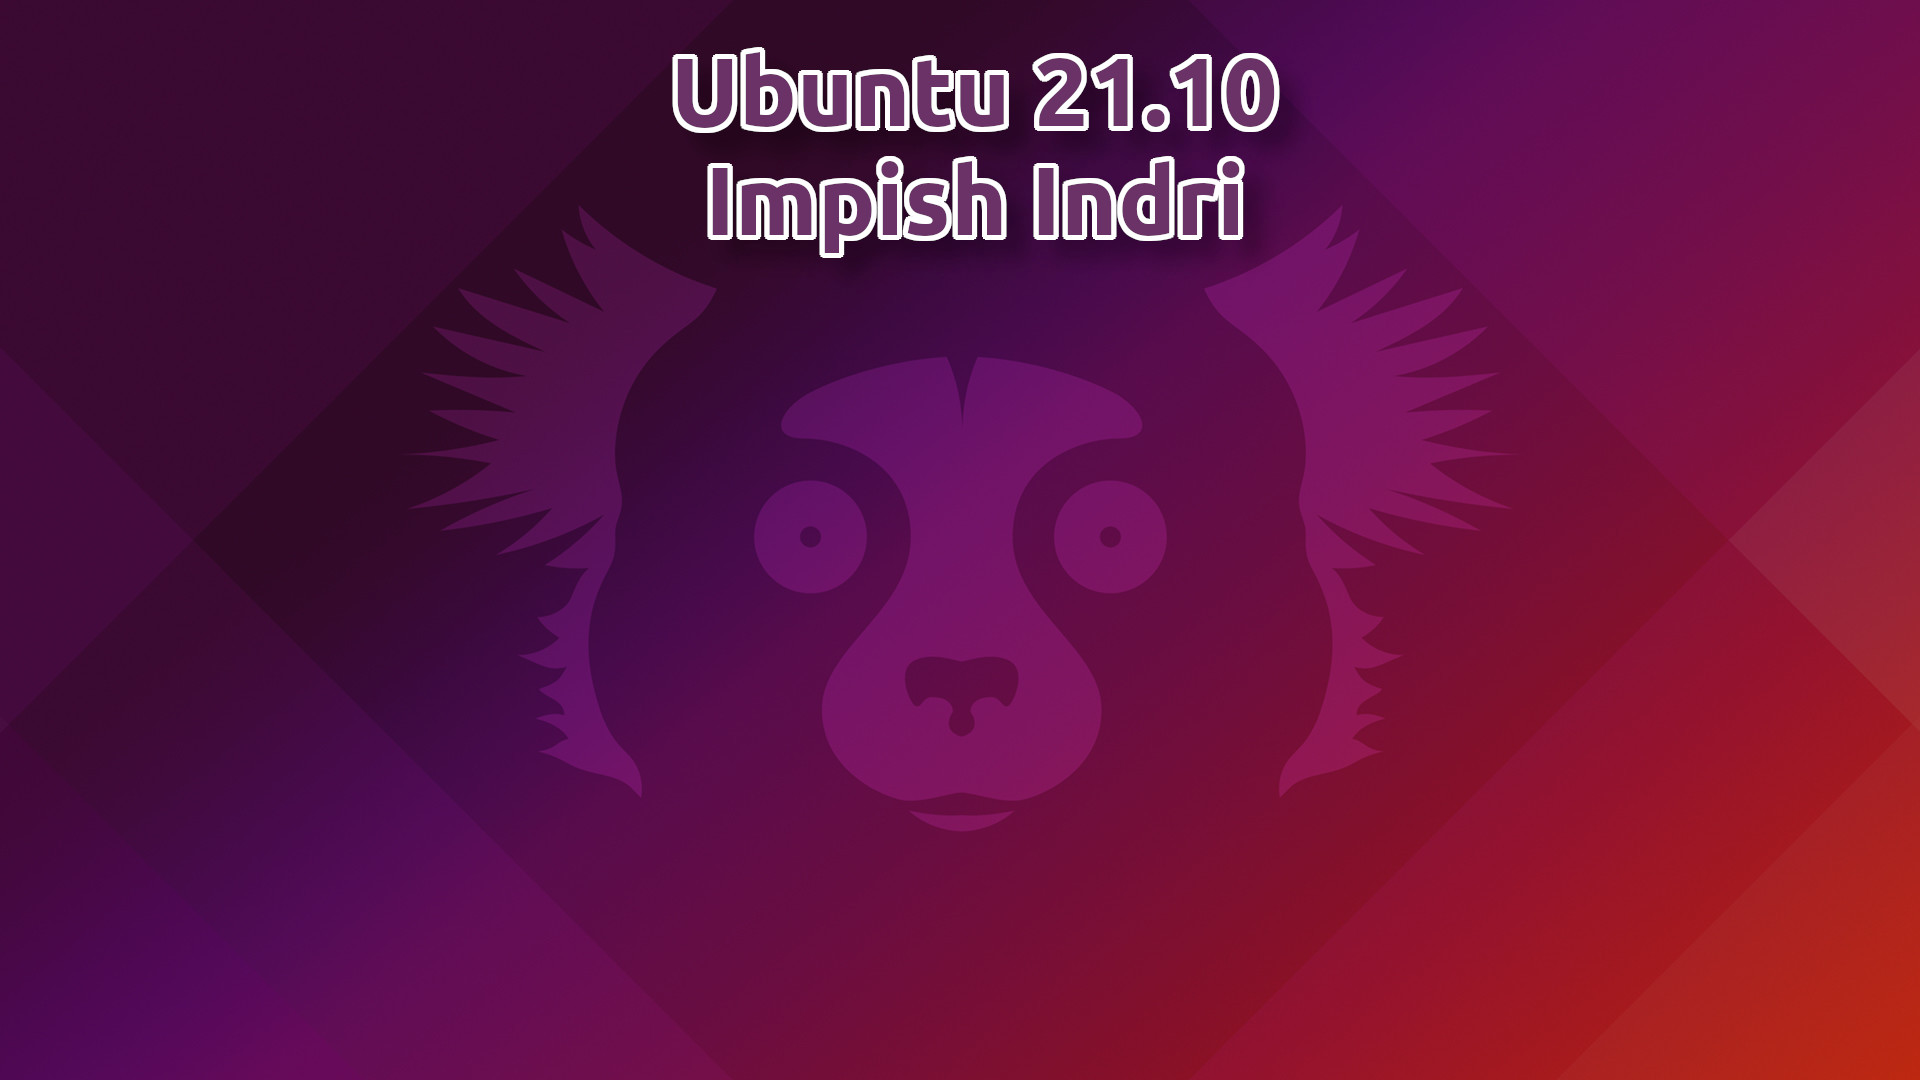 Ubuntu 21.10 Impish Indri featured image